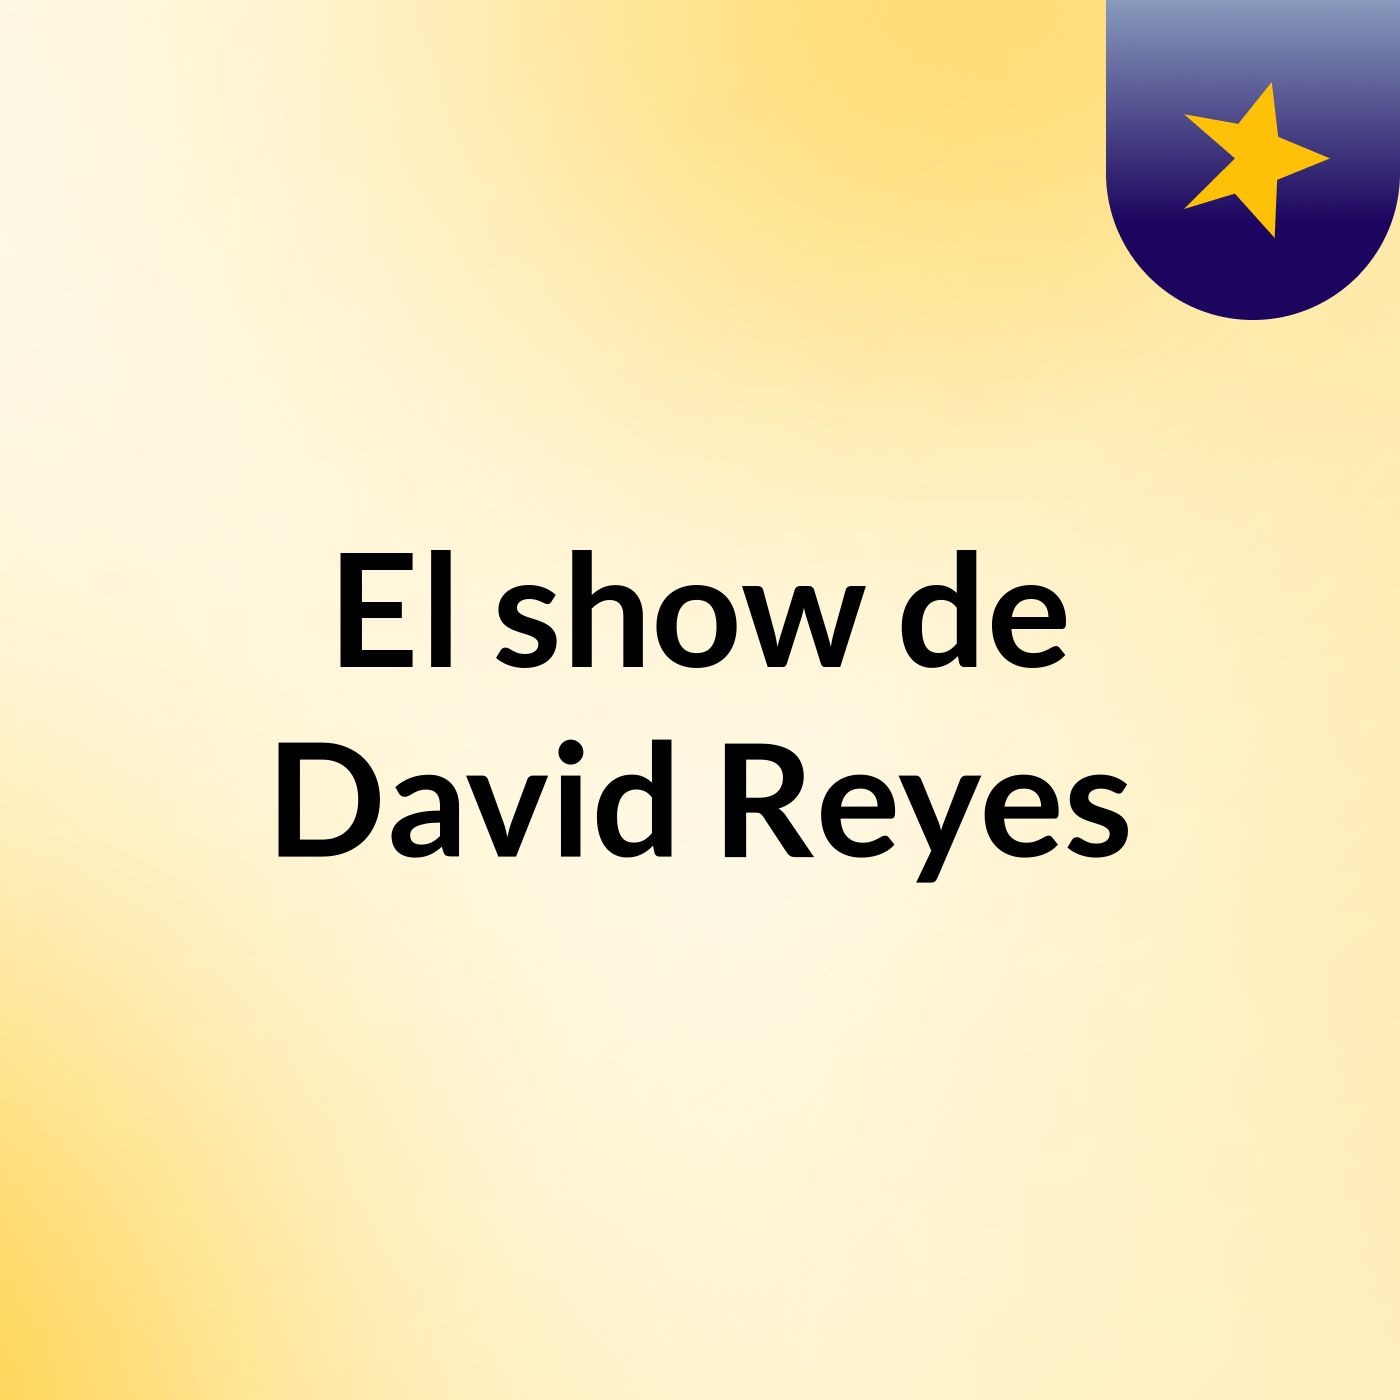 El show de David Reyes